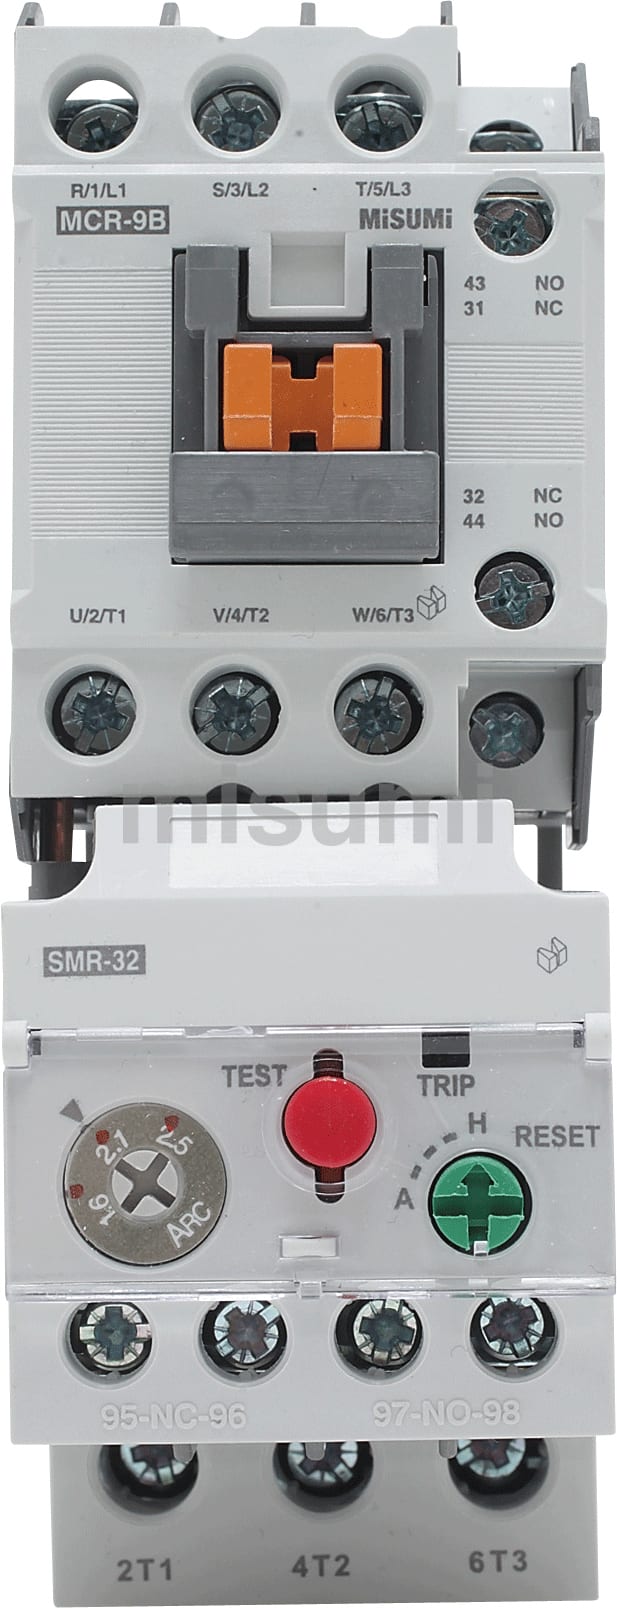 SW-03 2.8A ｺｲﾙAC200V 1A 新SC・NEO SCシリーズ 電磁開閉器 動作方式:非可逆形 モータ容量  AC400V～440V級:2.2/11kW/A 富士電機機器制御 MISUMI(ミスミ)